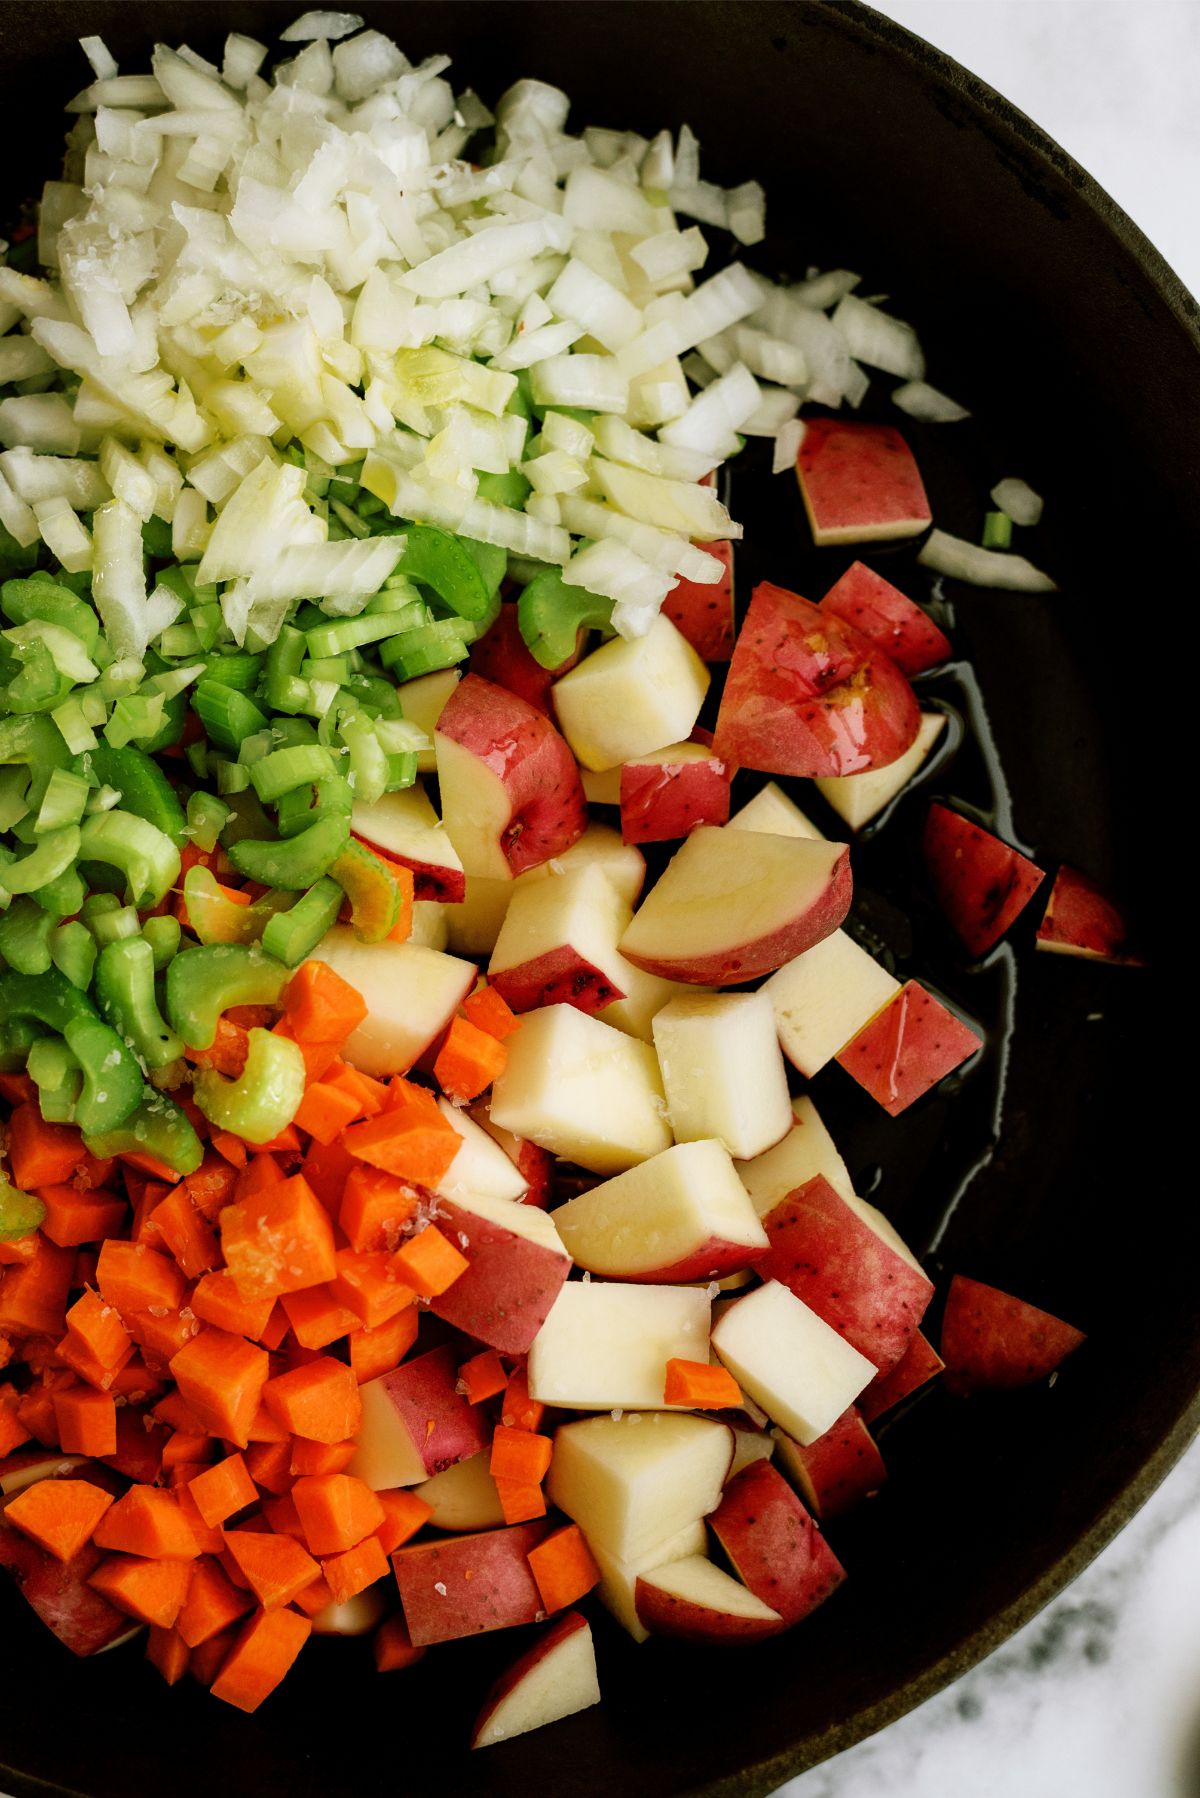 Chopped veggies in a skillet